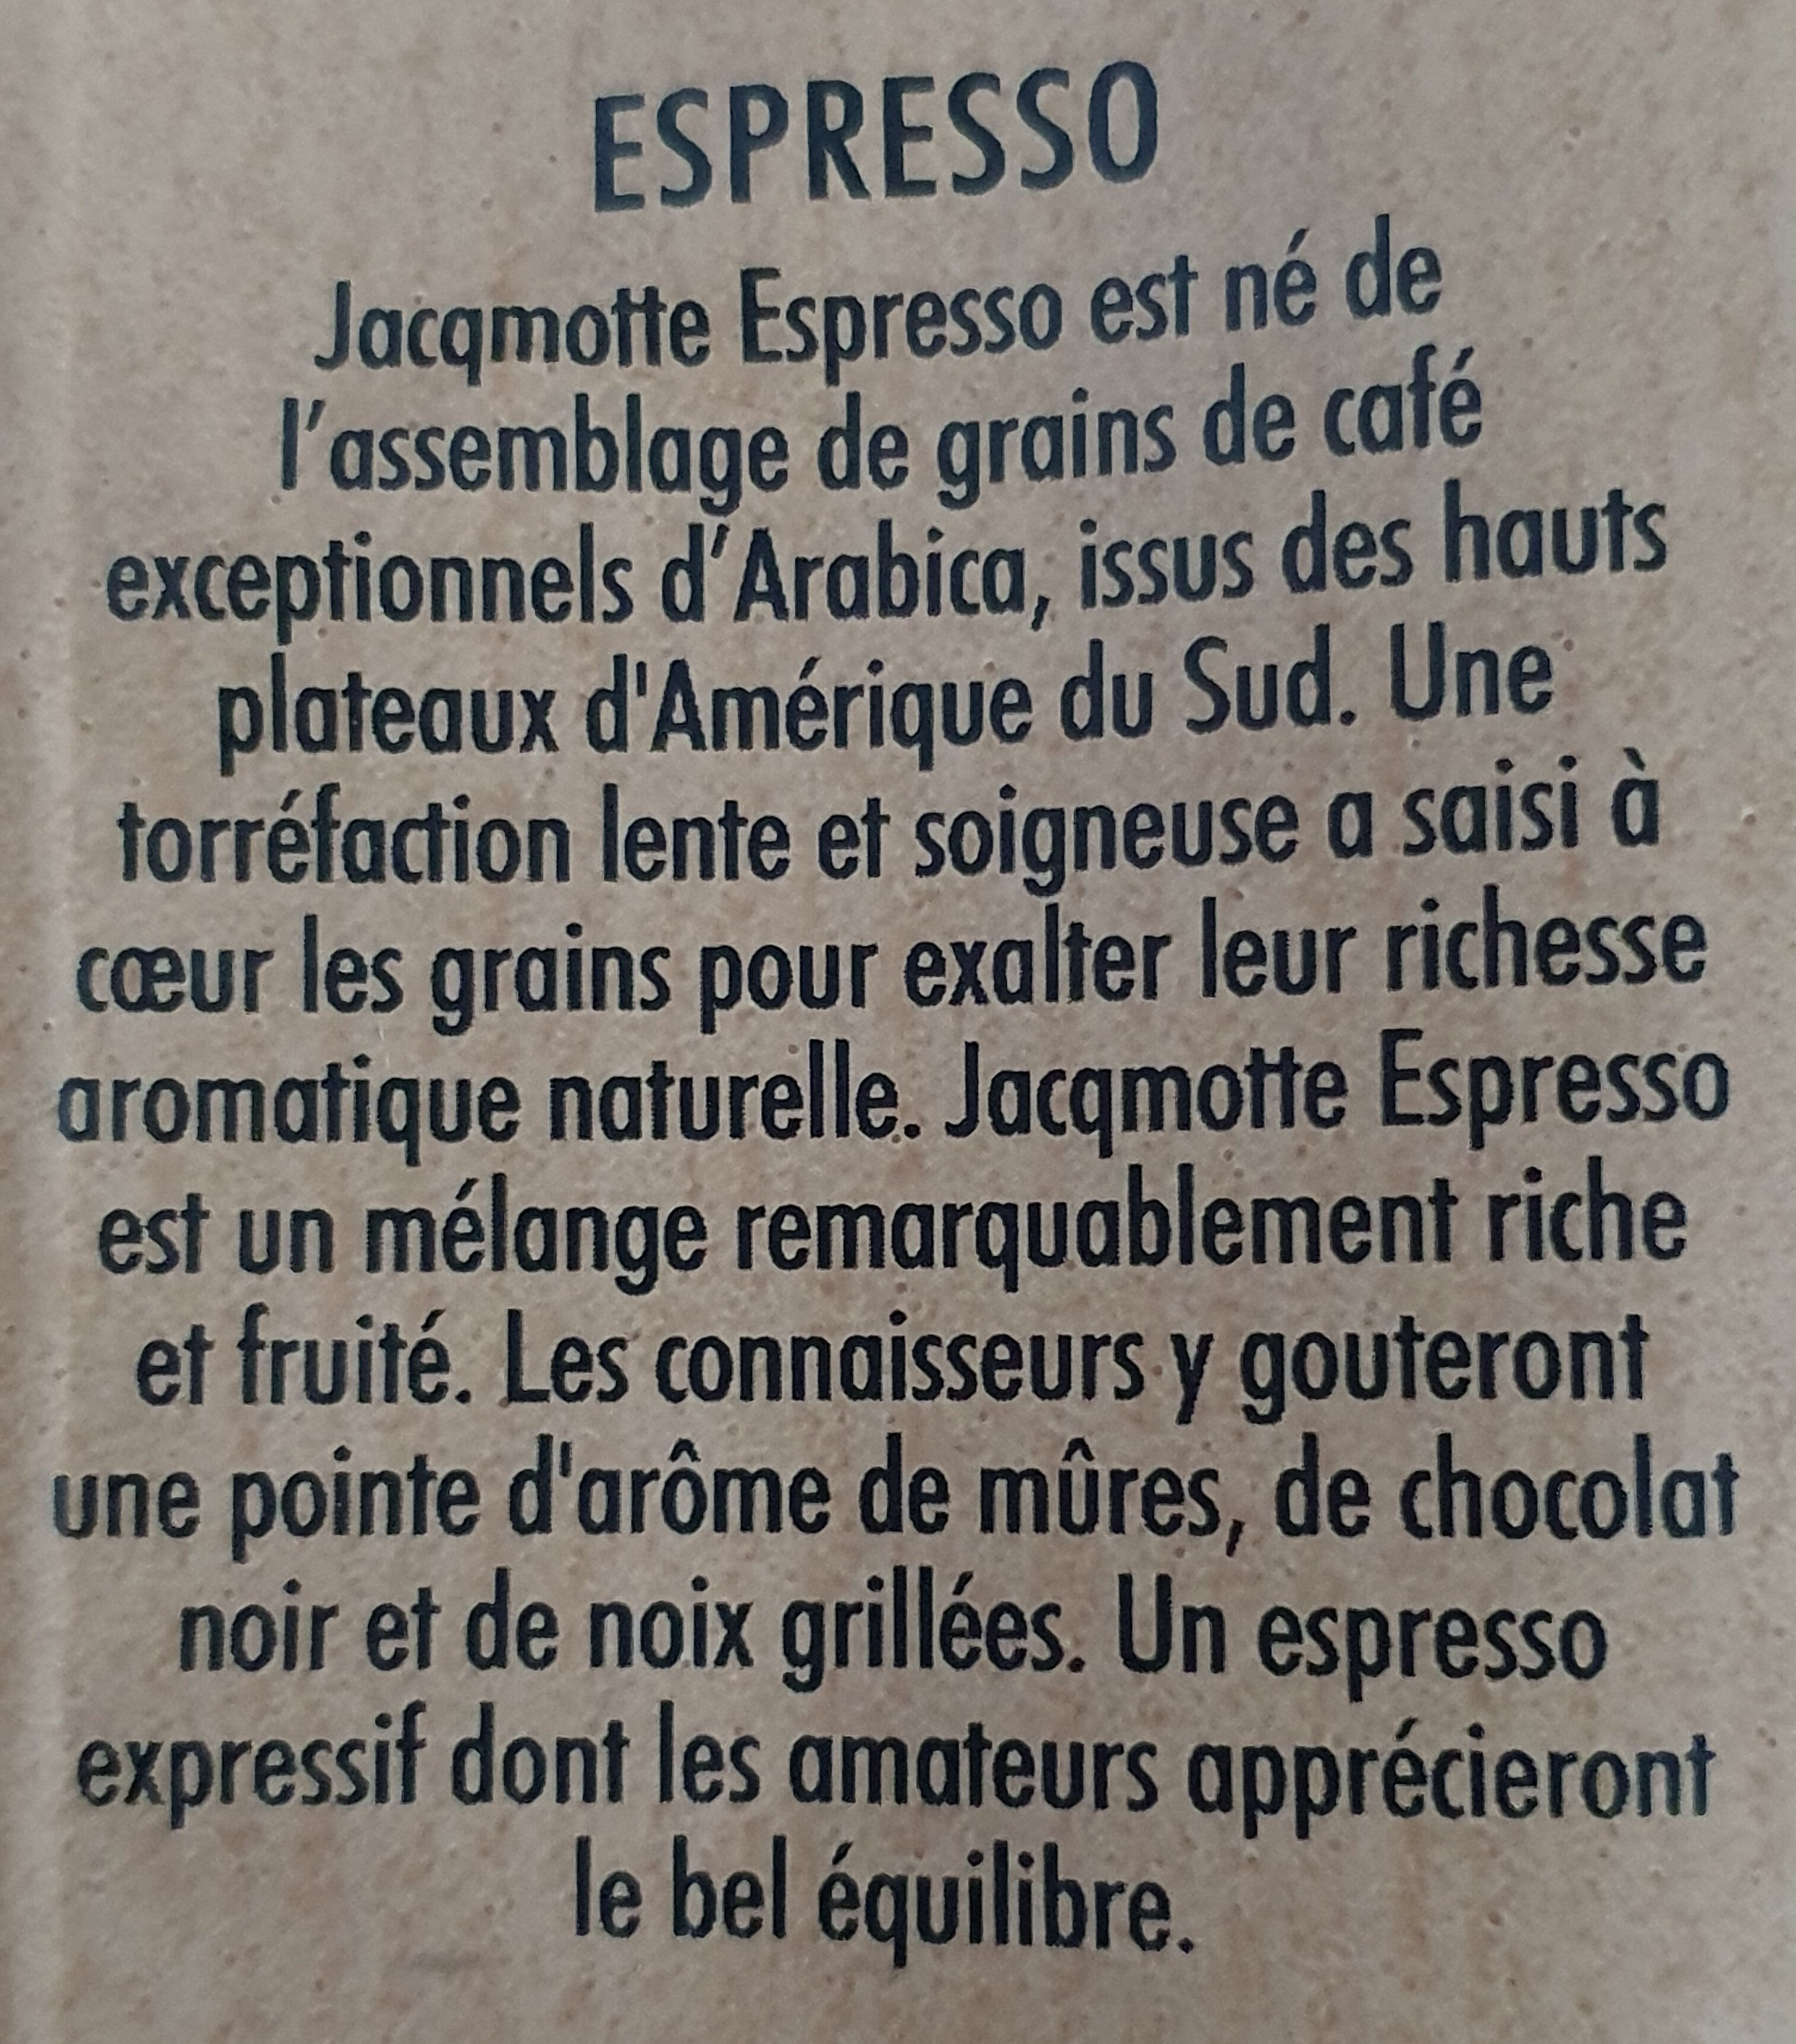 Espresso - Ingrédients